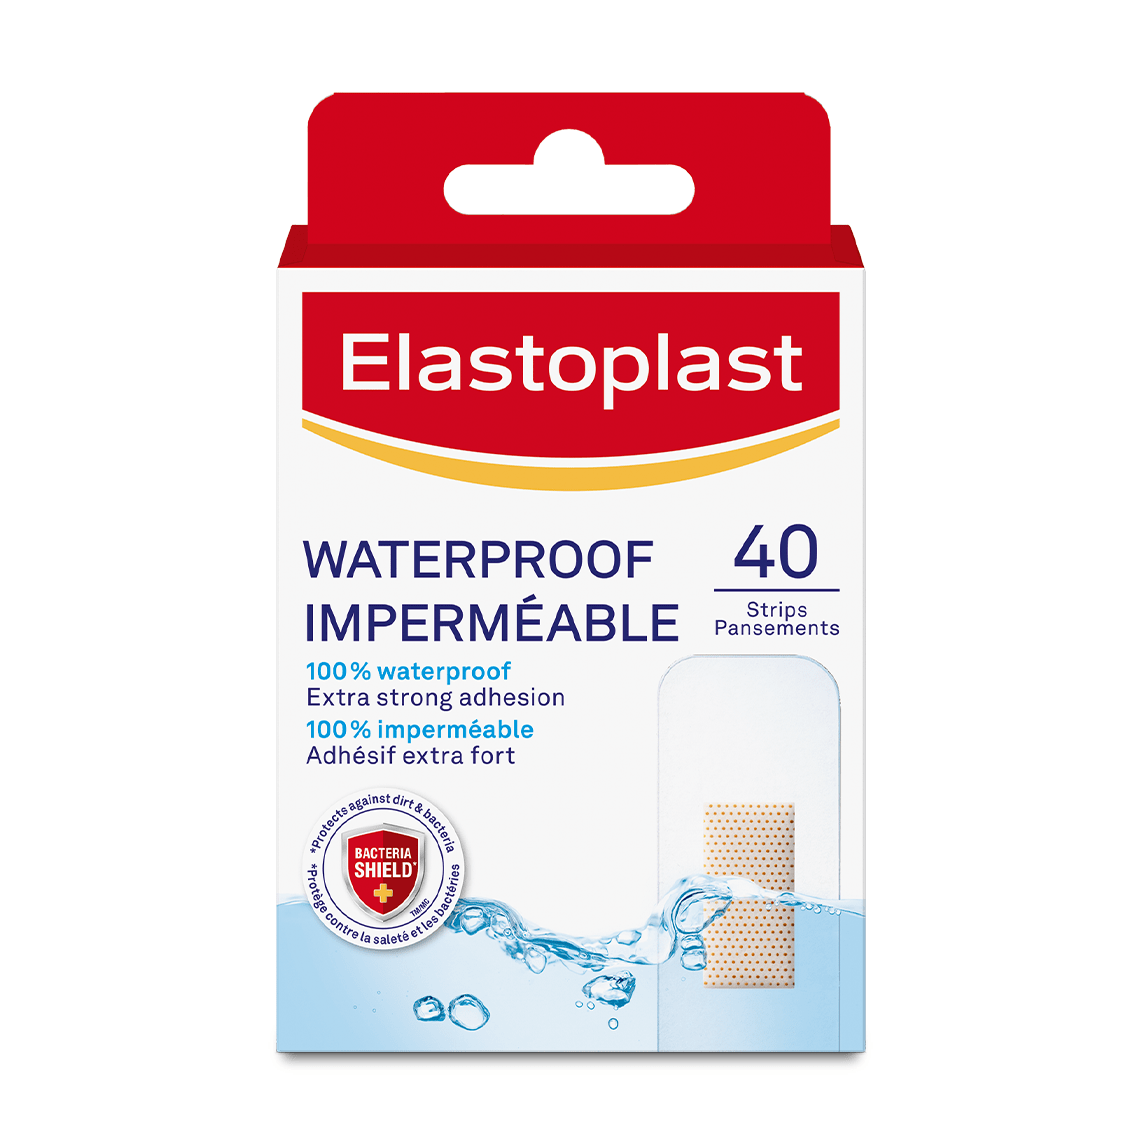 Elastoplast Waterproof Bandage Wound Protection